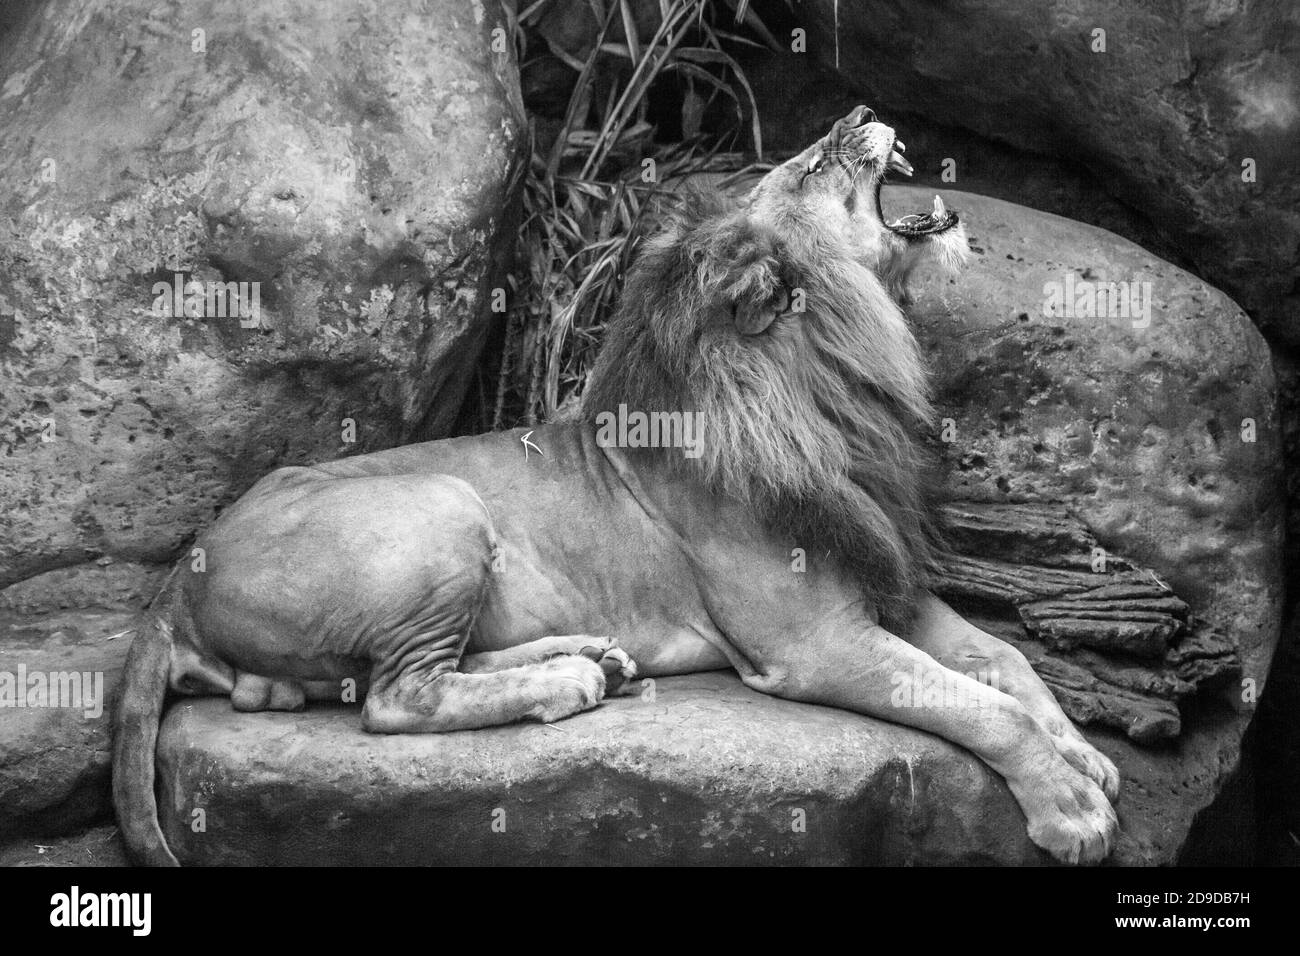 León africano masculino adulto. Disparo de cuerpo entero. Parque Safari. Gianyar, Bali, Indonesia. Blanco y negro. Foto de stock